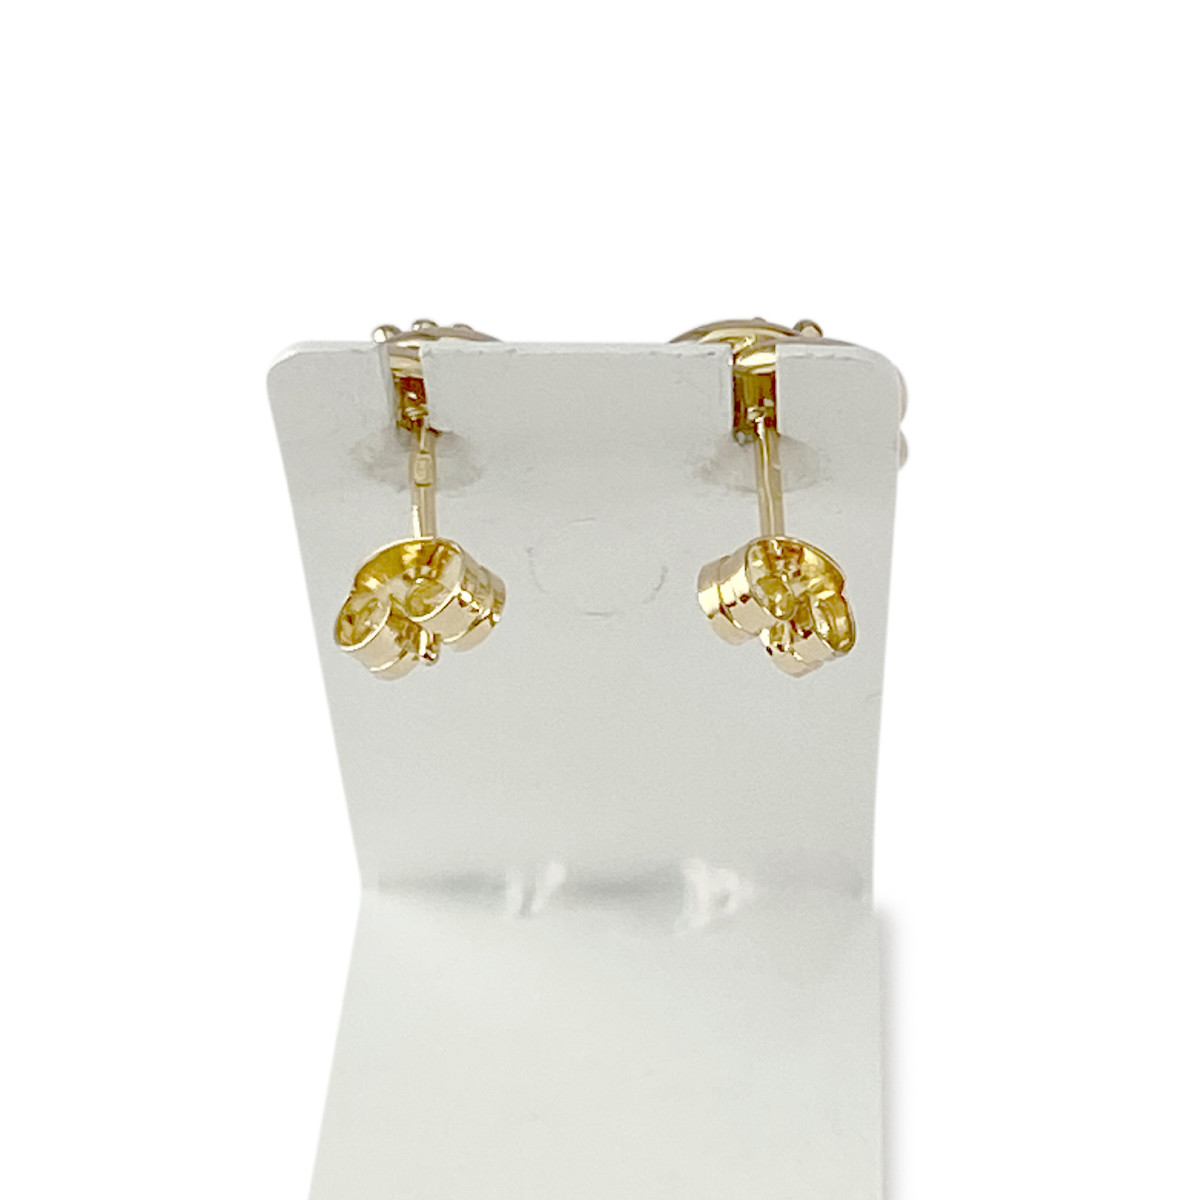 Boucles d'oreilles d'occasion or 750 jaune et rhodié émeraudes diamants - vue 3